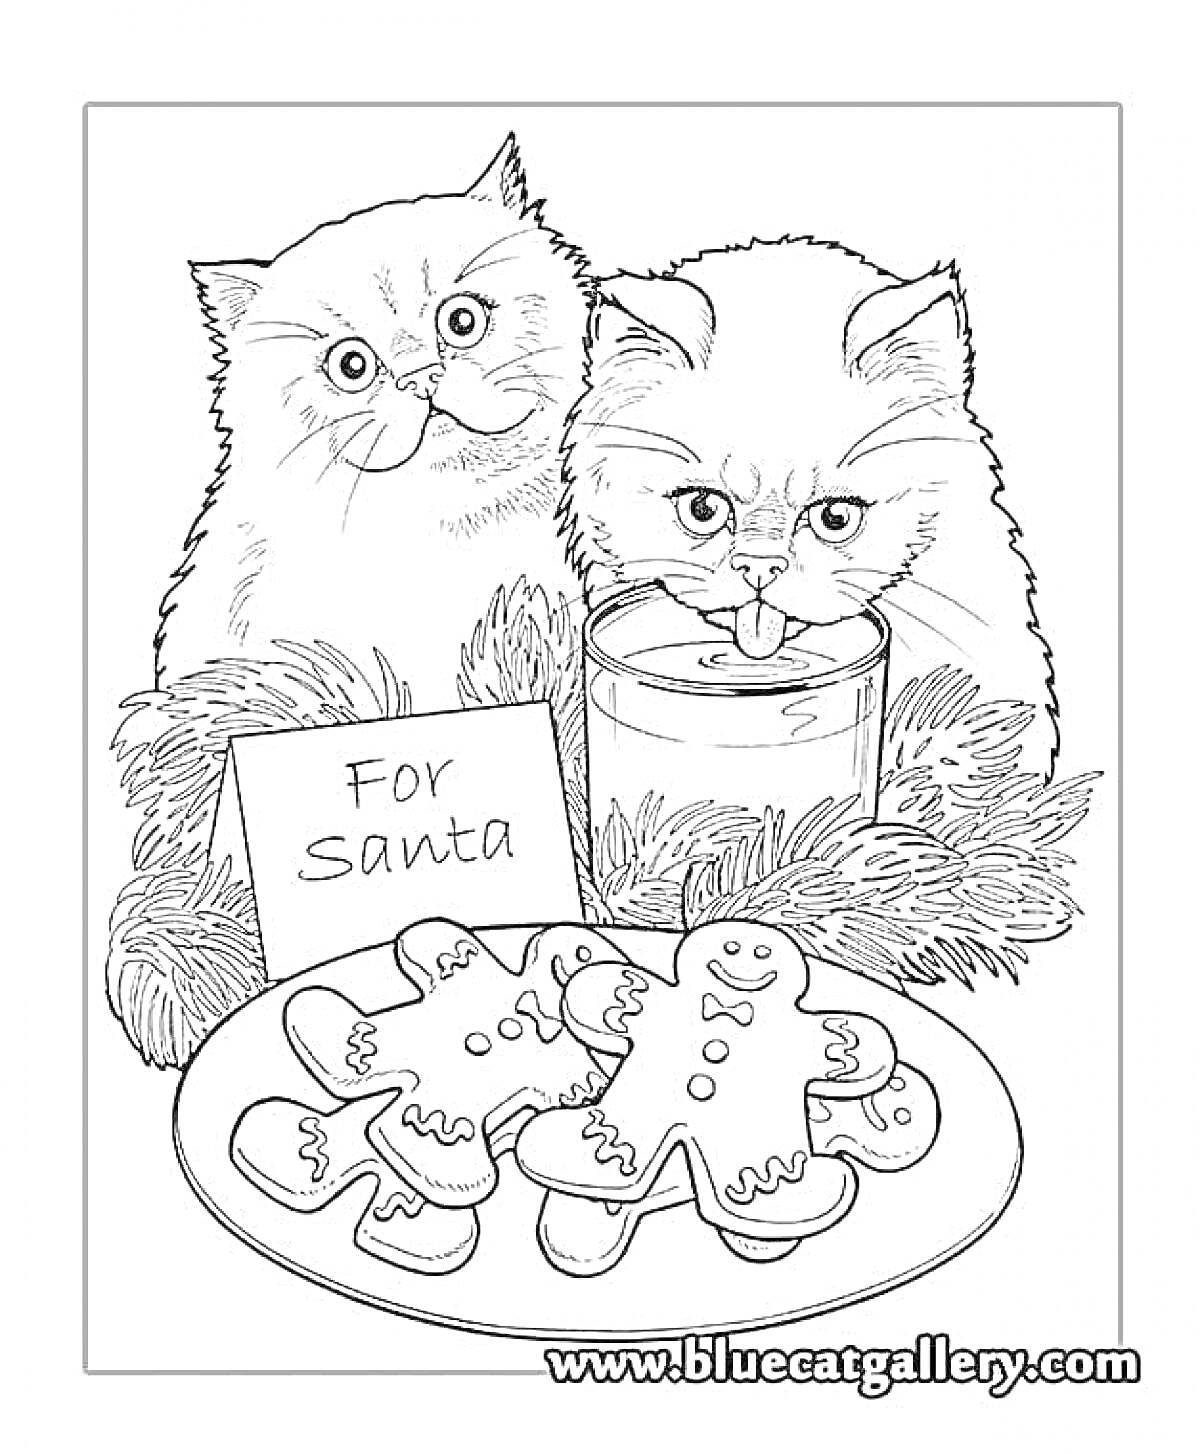 Раскраска Два кота, еловые ветки, стакан молока, печенье в виде человечков, записка для Санты